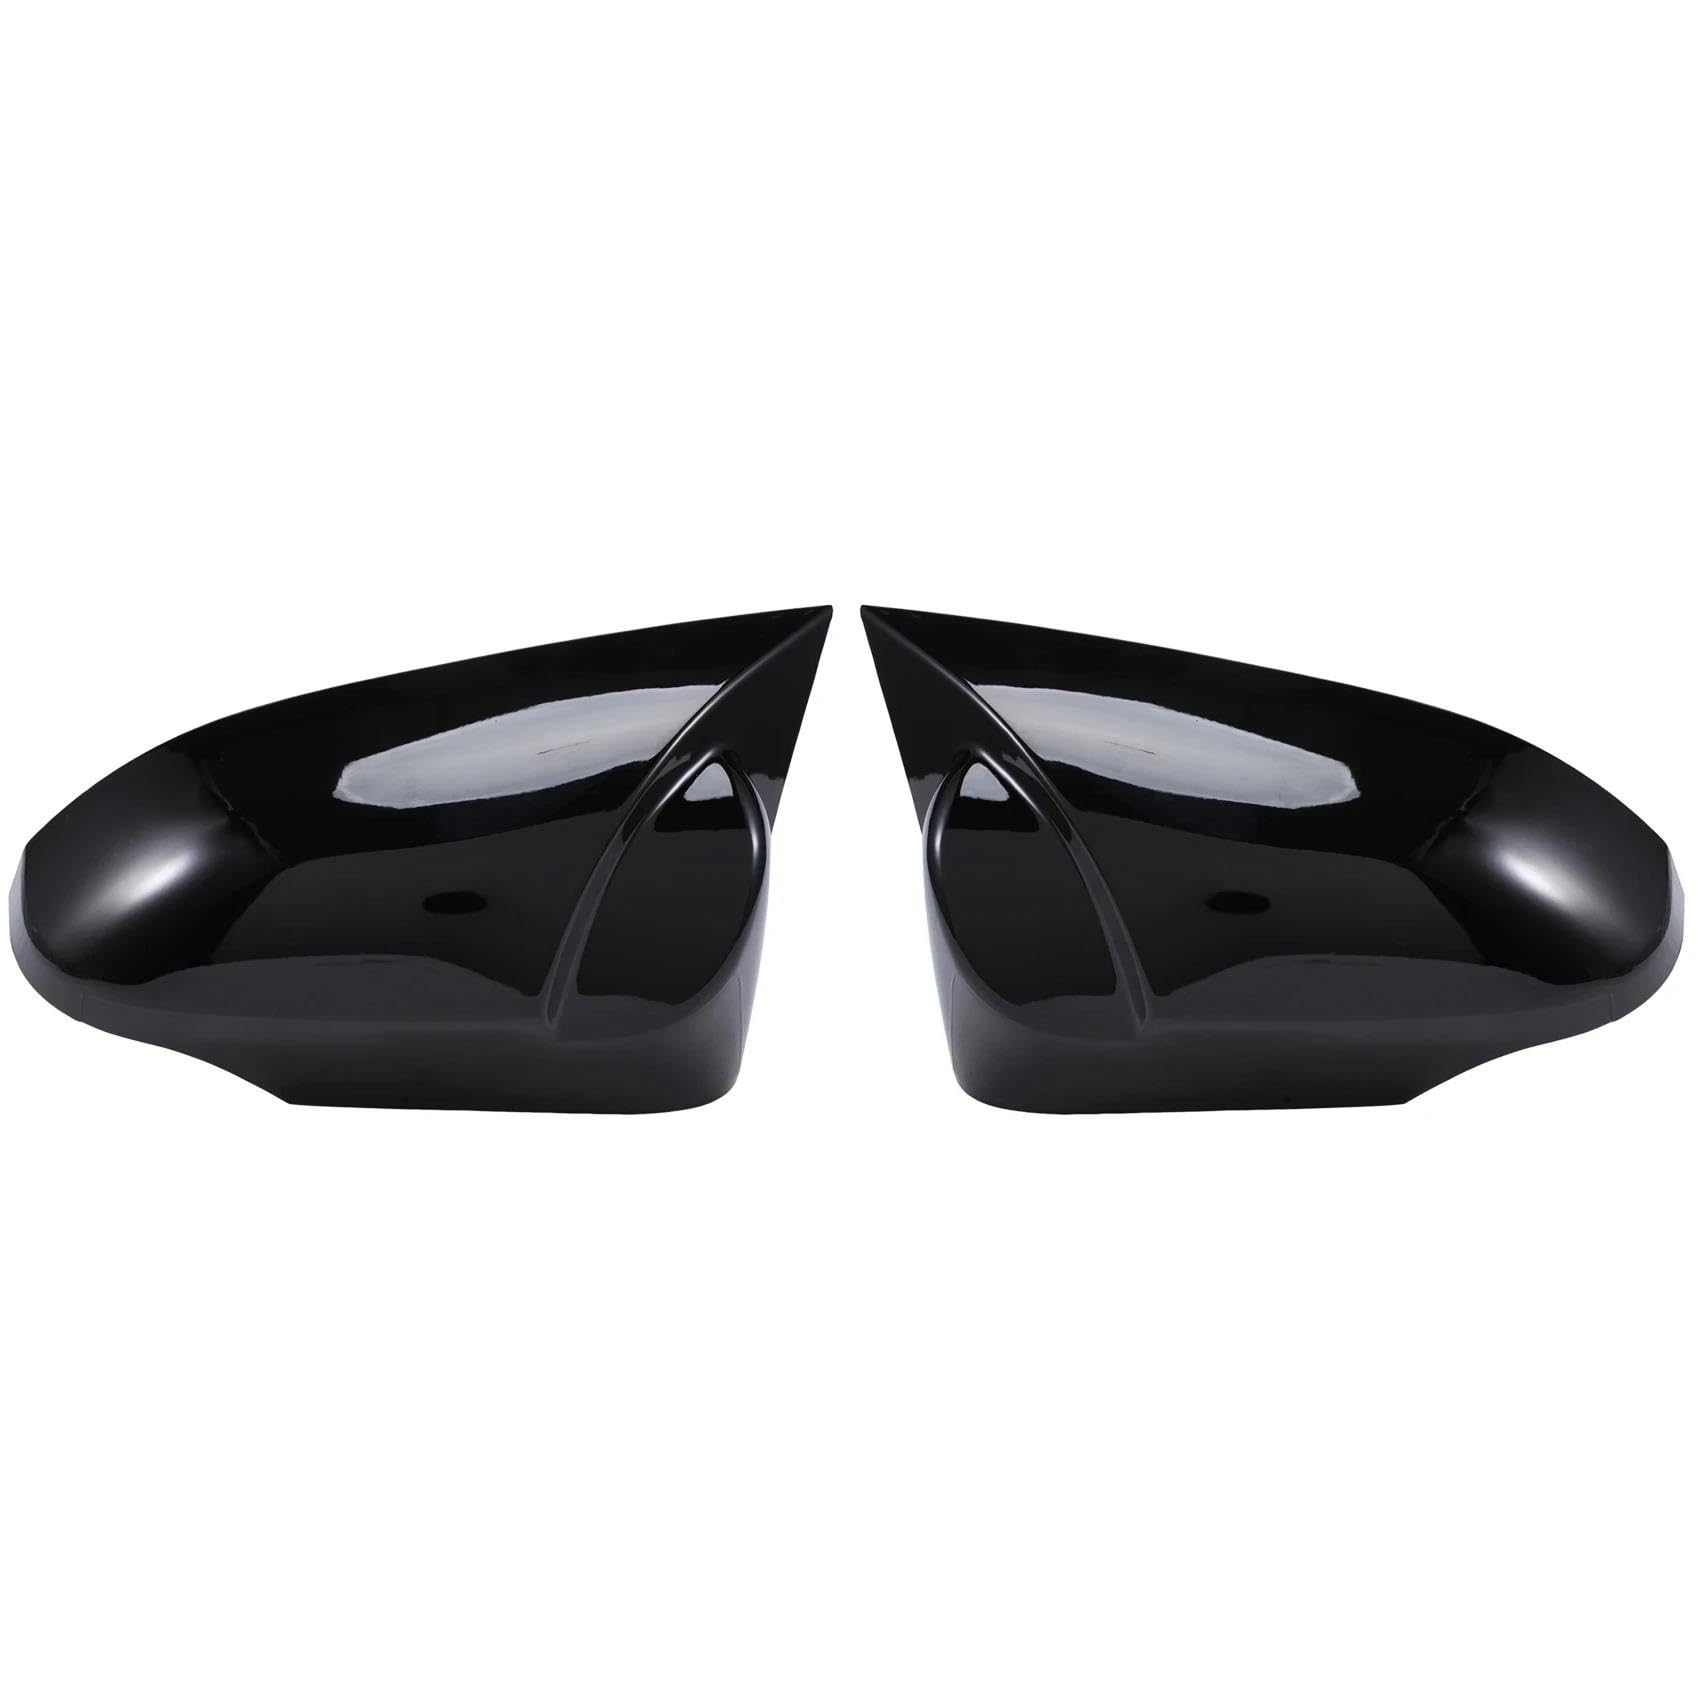 YPLVWSOYQ Kompatibel Mit Yaris 2013–2020, Auto-Rückspiegelschale, Verkleidung, Rückspiegelabdeckung, Dekorative Spiegelschalenkappe Gehäuse Auto-Rückspiegel von YPLVWSOYQ